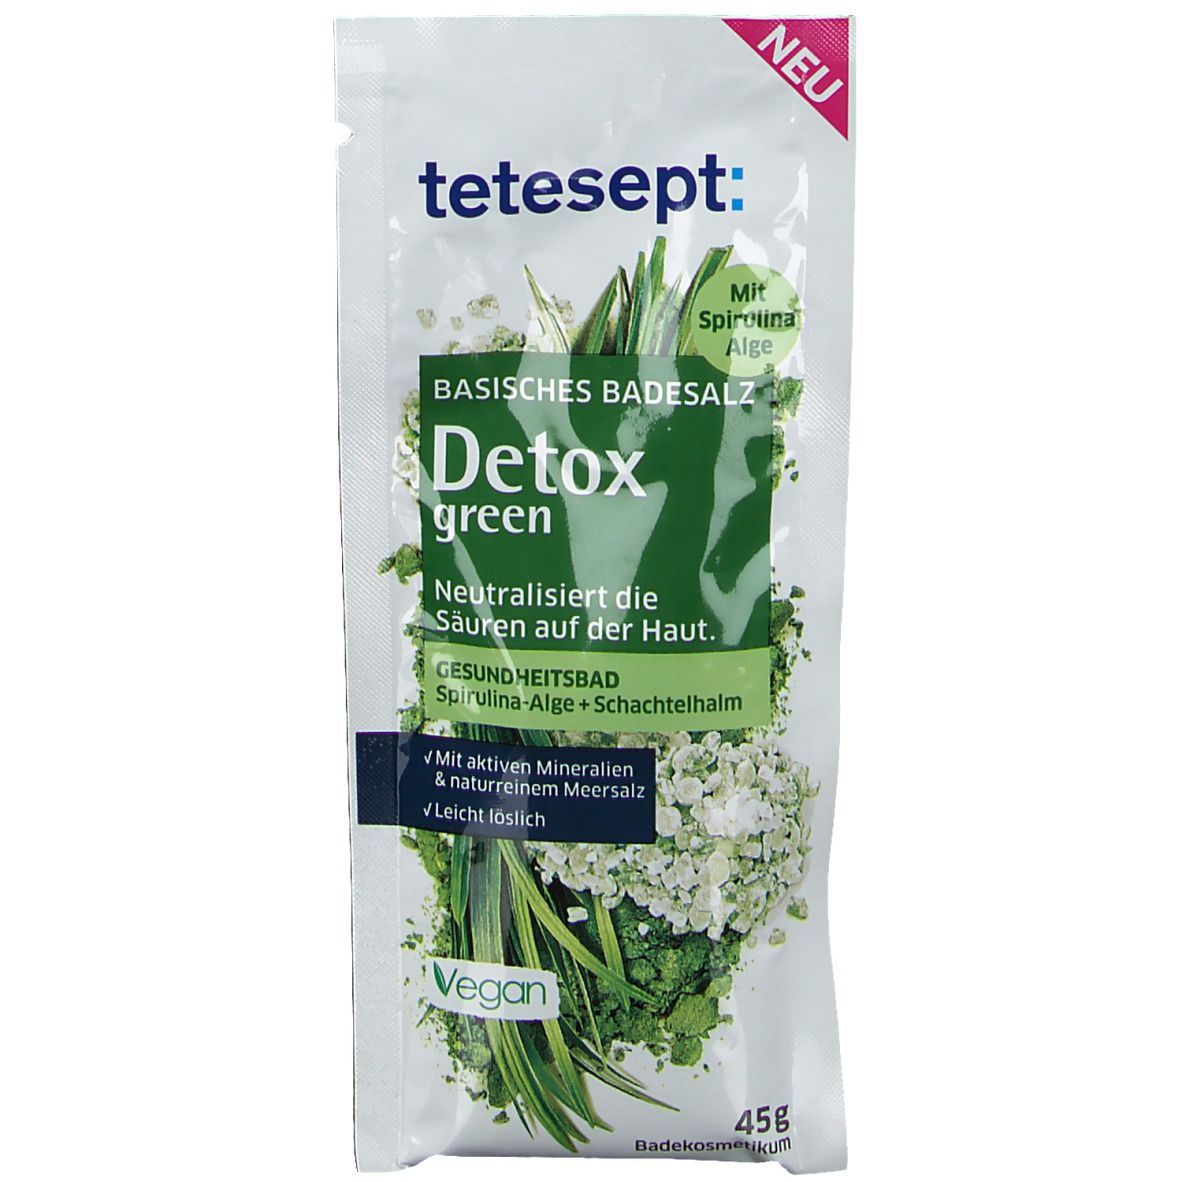 tetesept® Basisches Badesalz Detox green